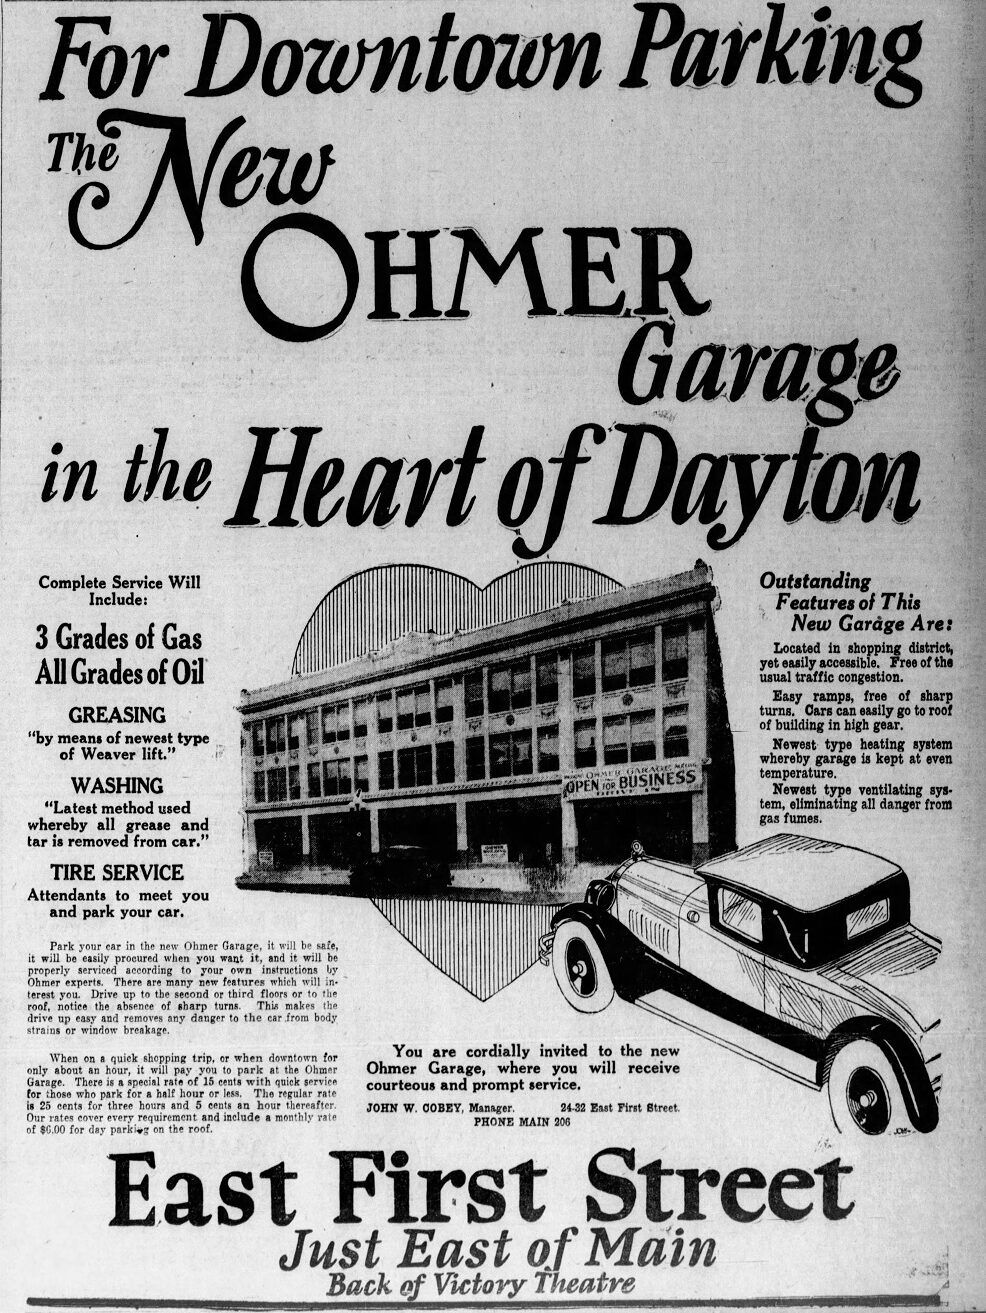 ohmer garage advertisement